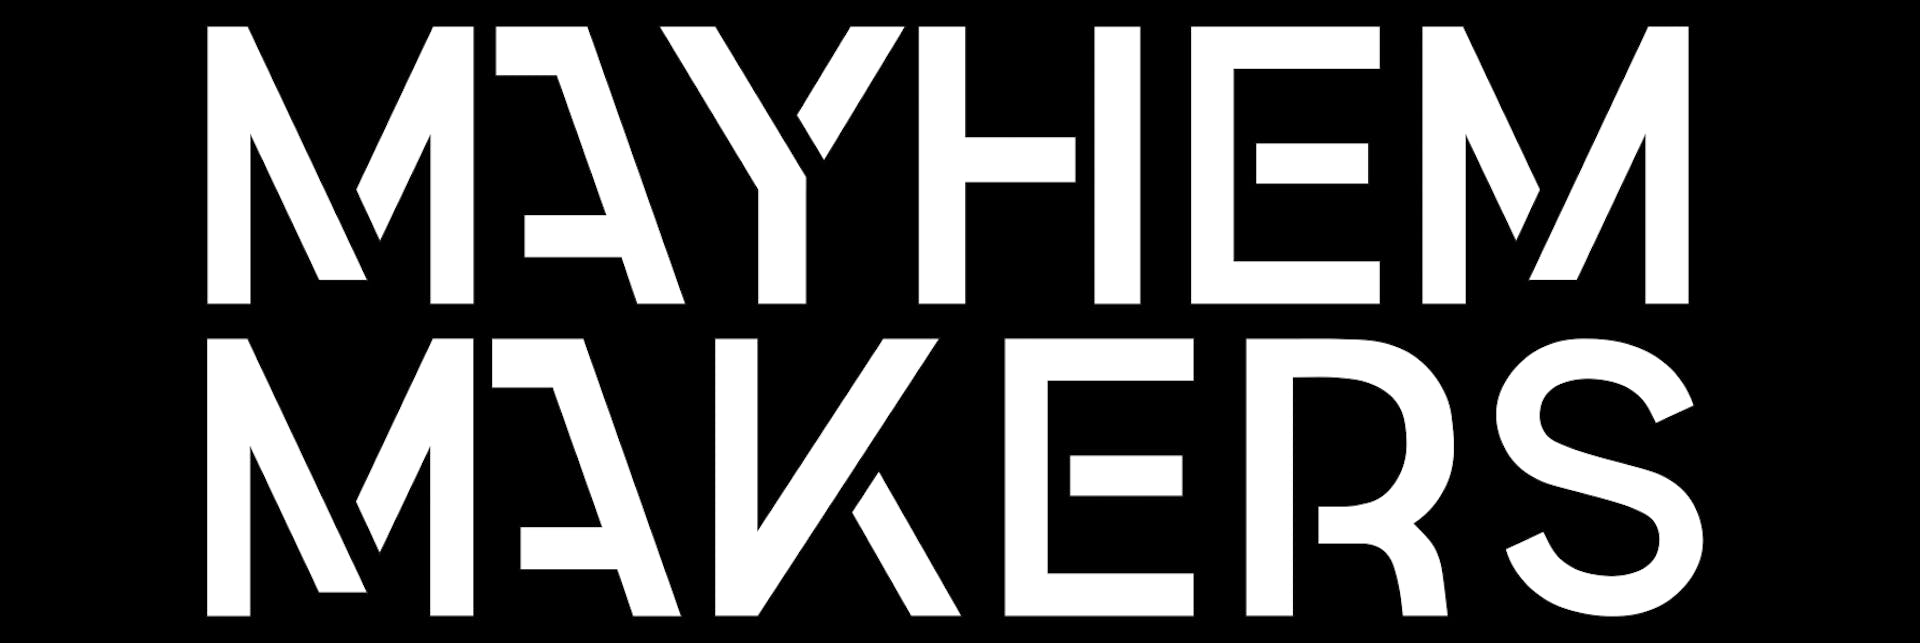 Mayhem Makers